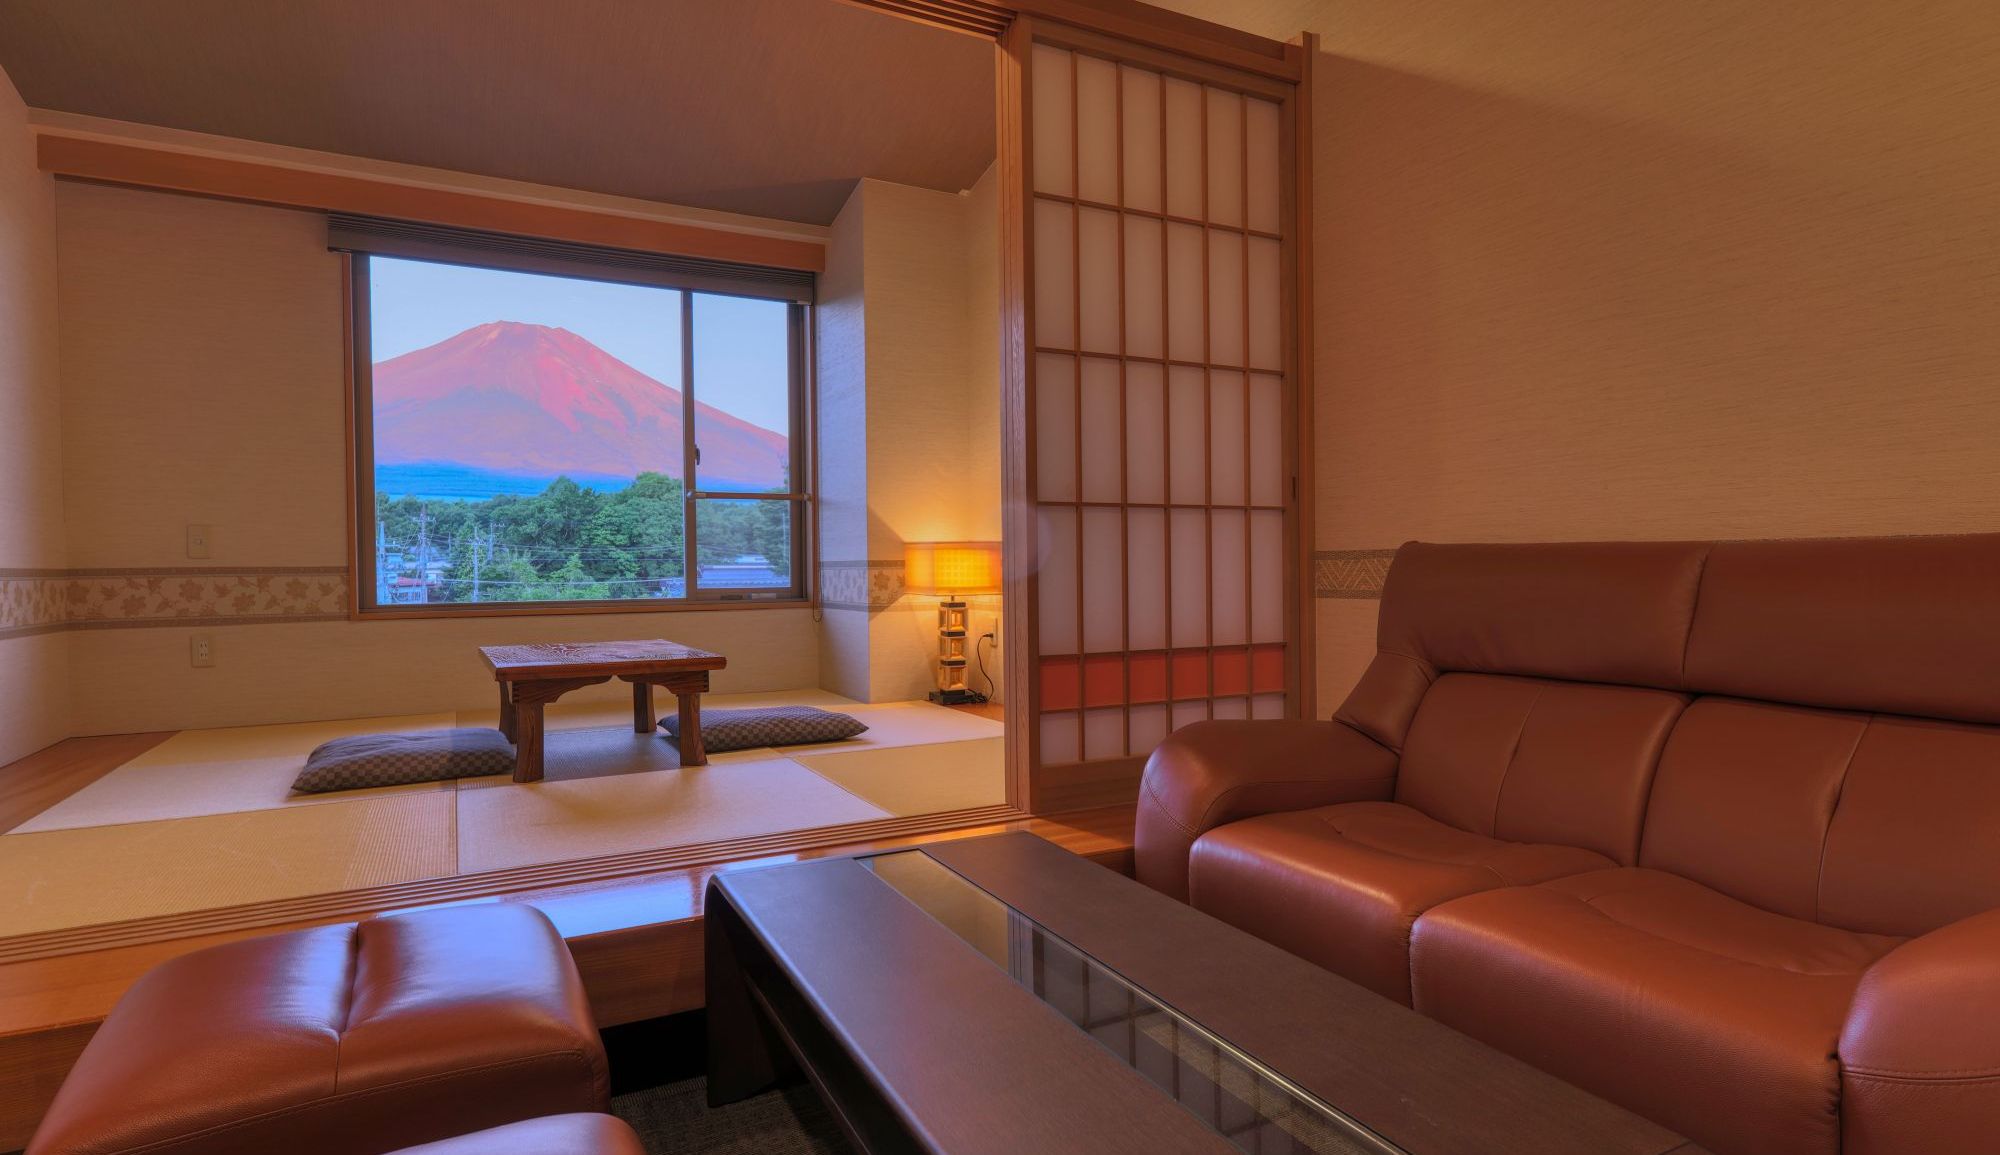 【富士山ビュー温泉風呂付スイートルーム】富士山を眺める檜造りの温泉風呂